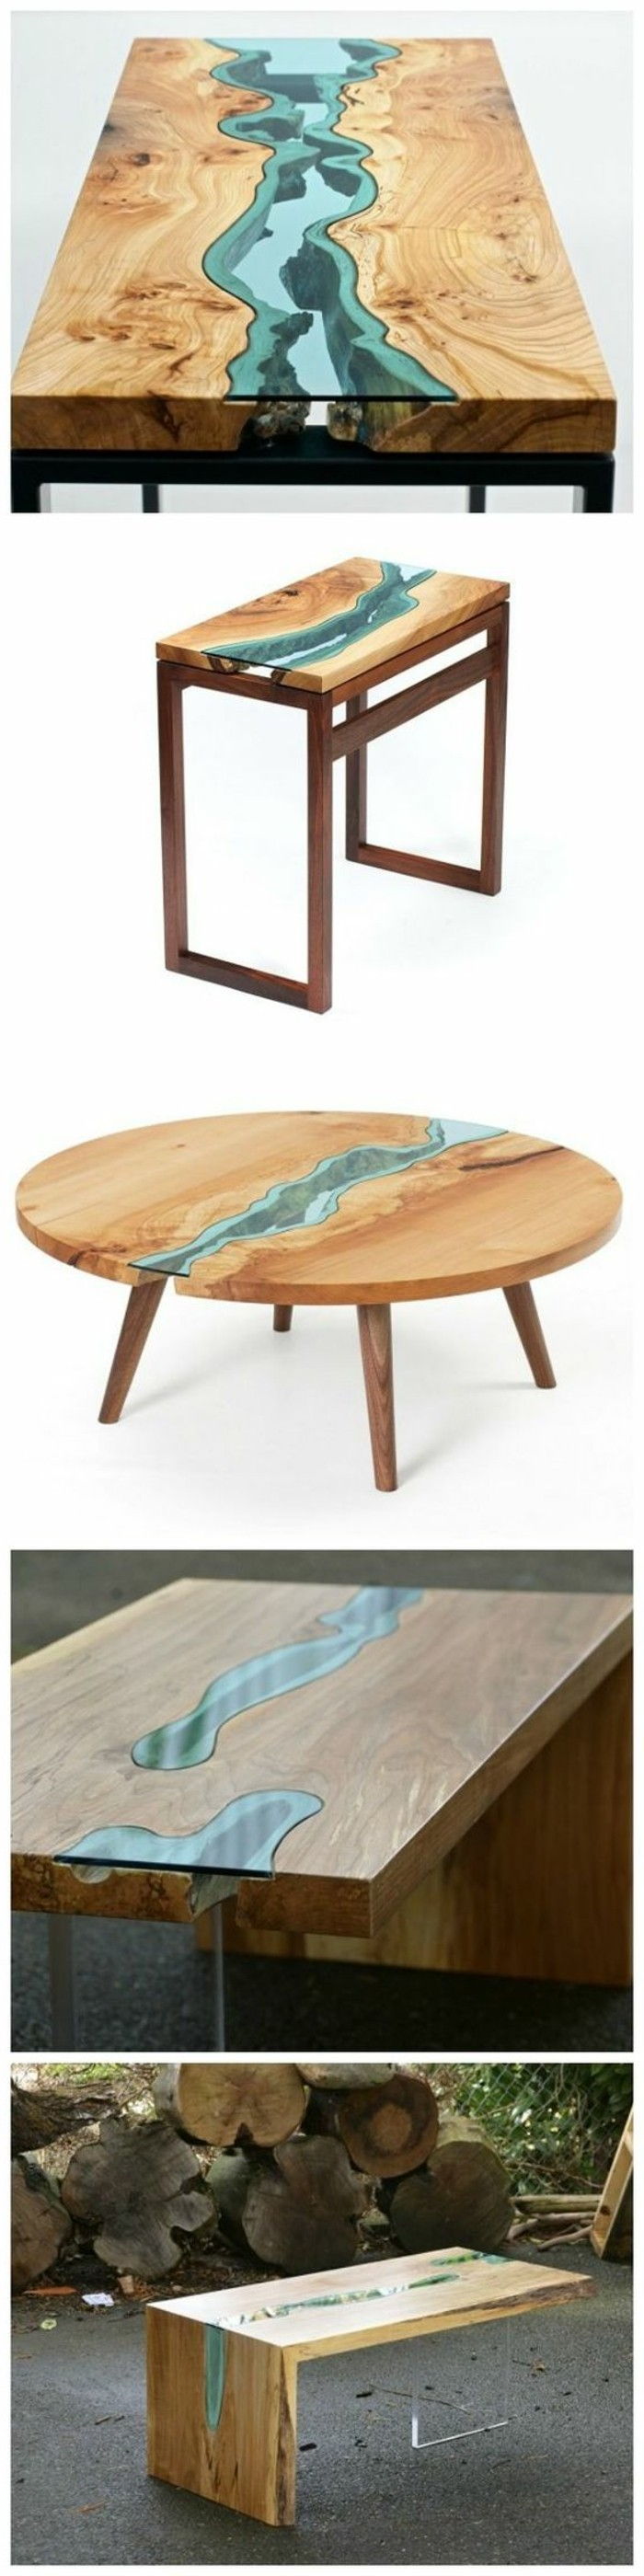 -Moebel-diy creativ-wohnideen-masă de lemn și sticlă-propriu-build